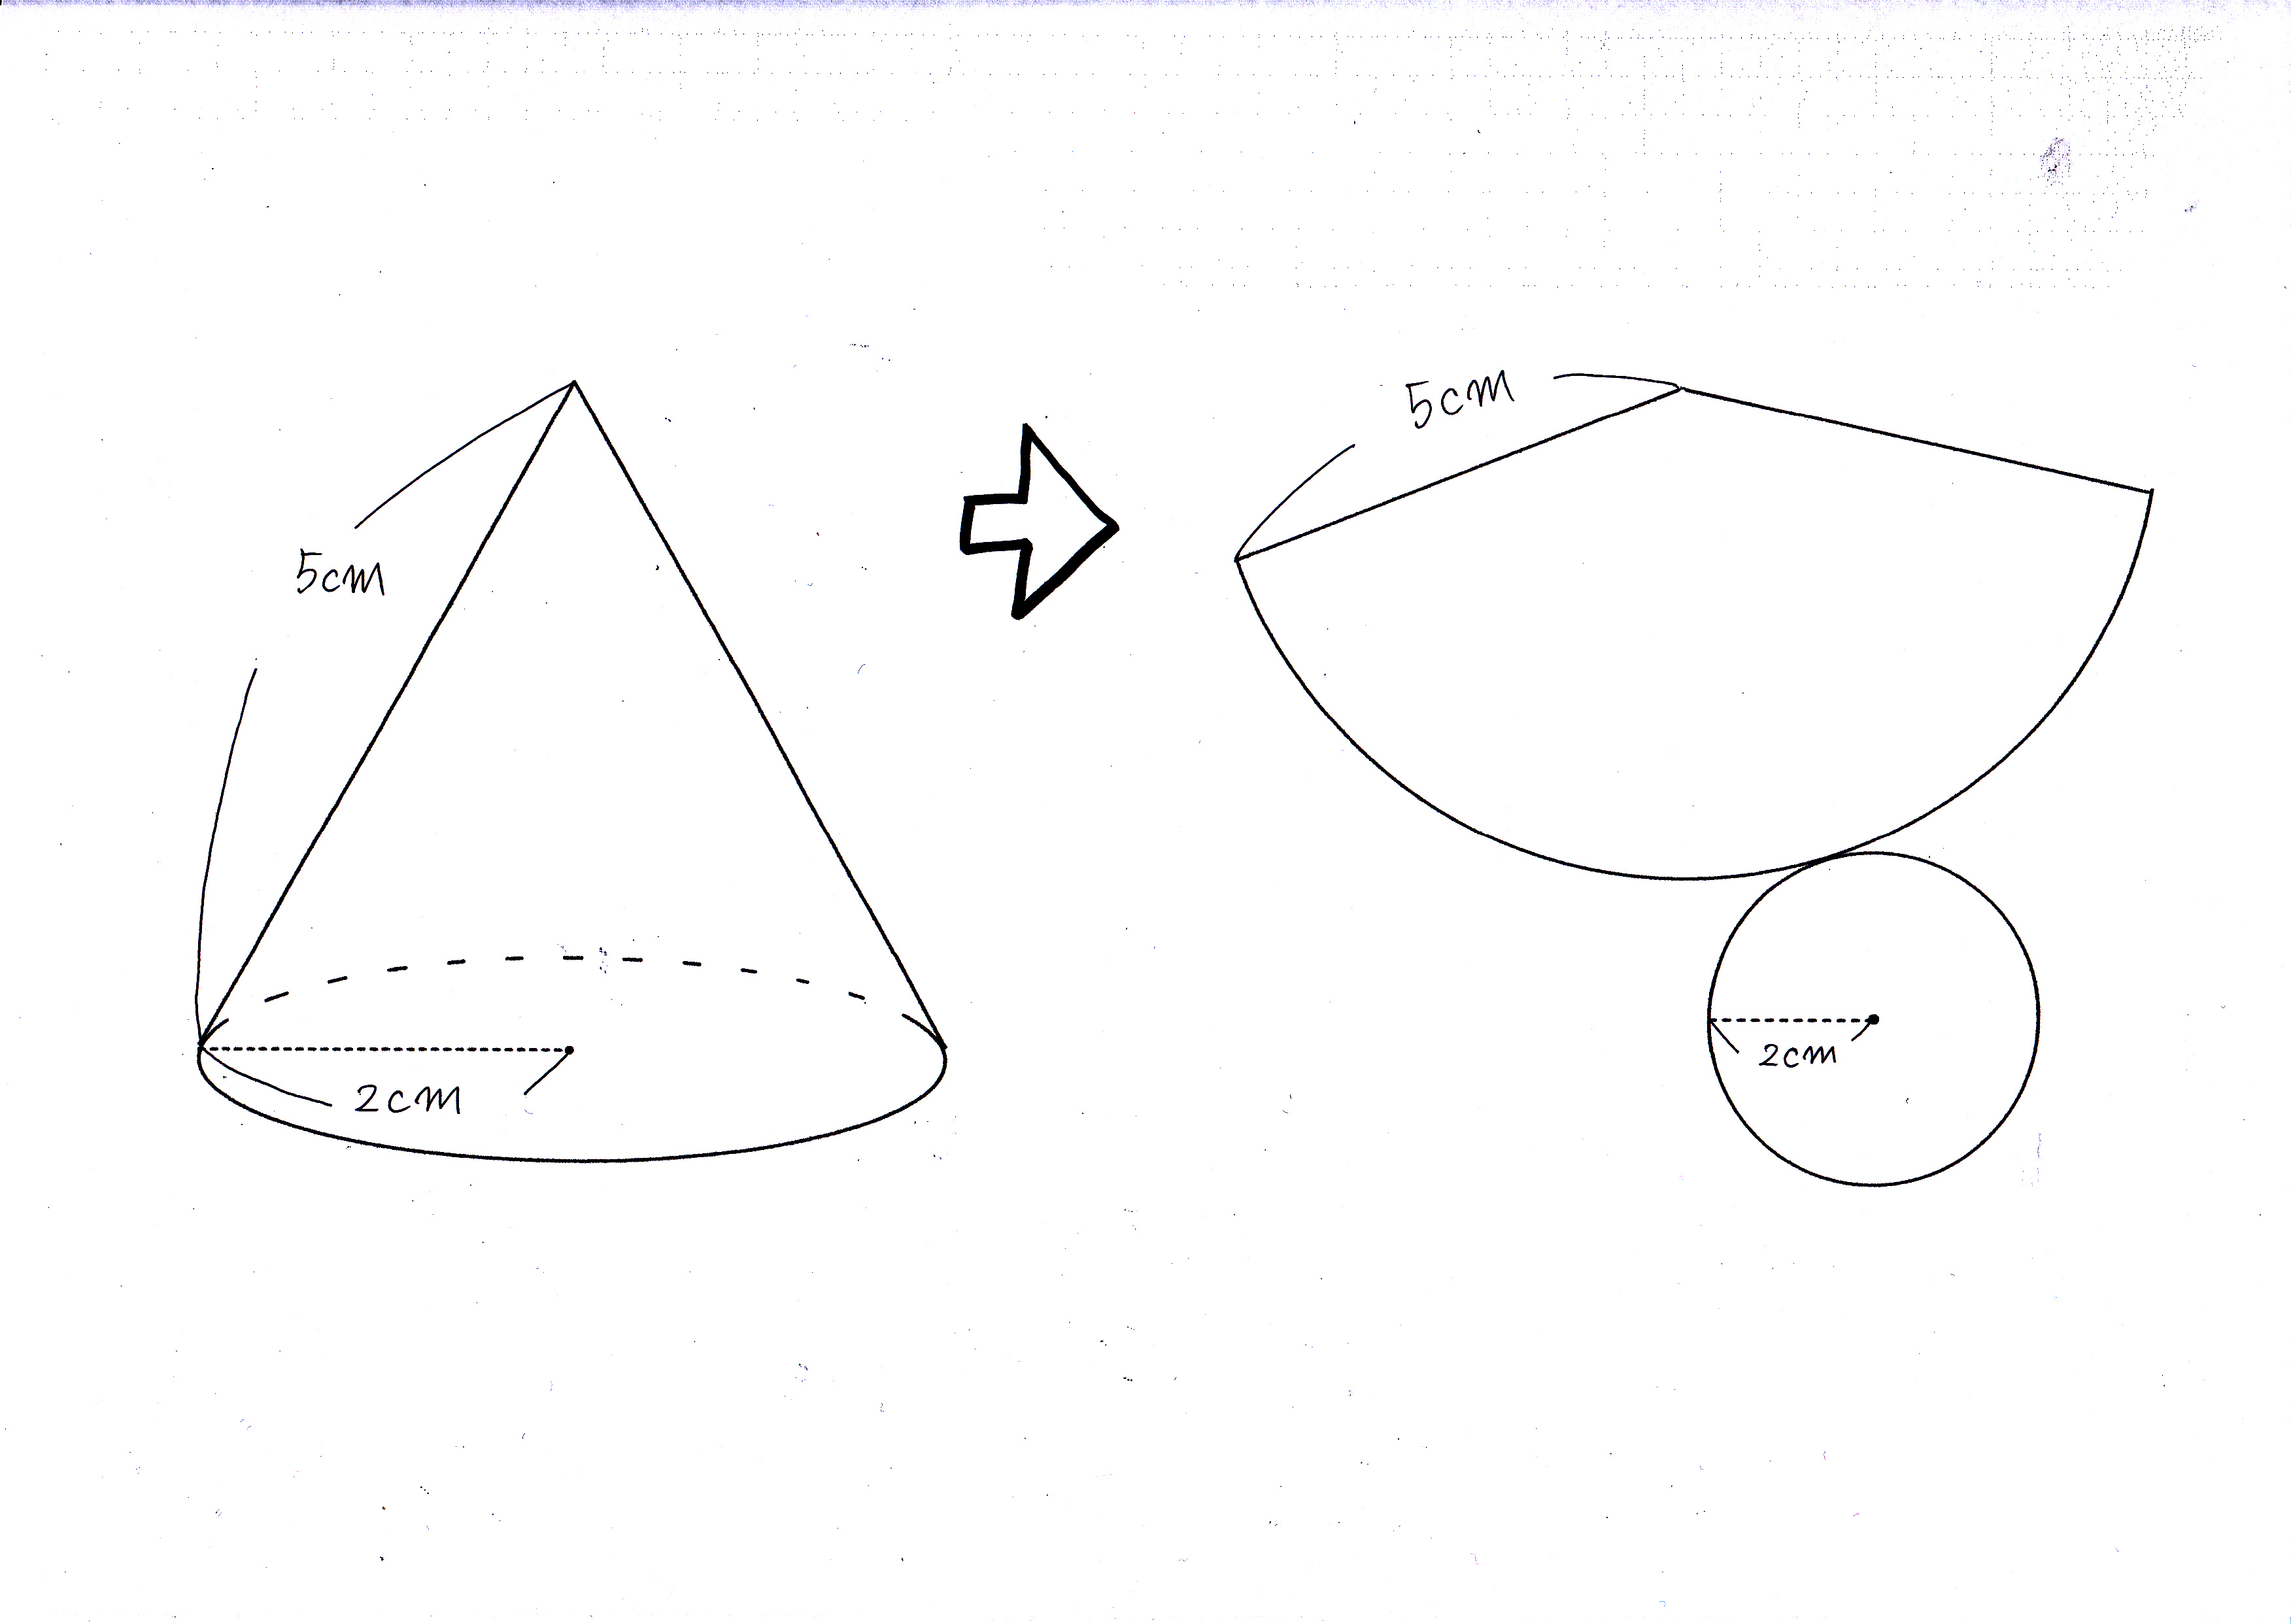 円錐の空間図形から表面積を求める基本公式と裏技 現役塾講師の